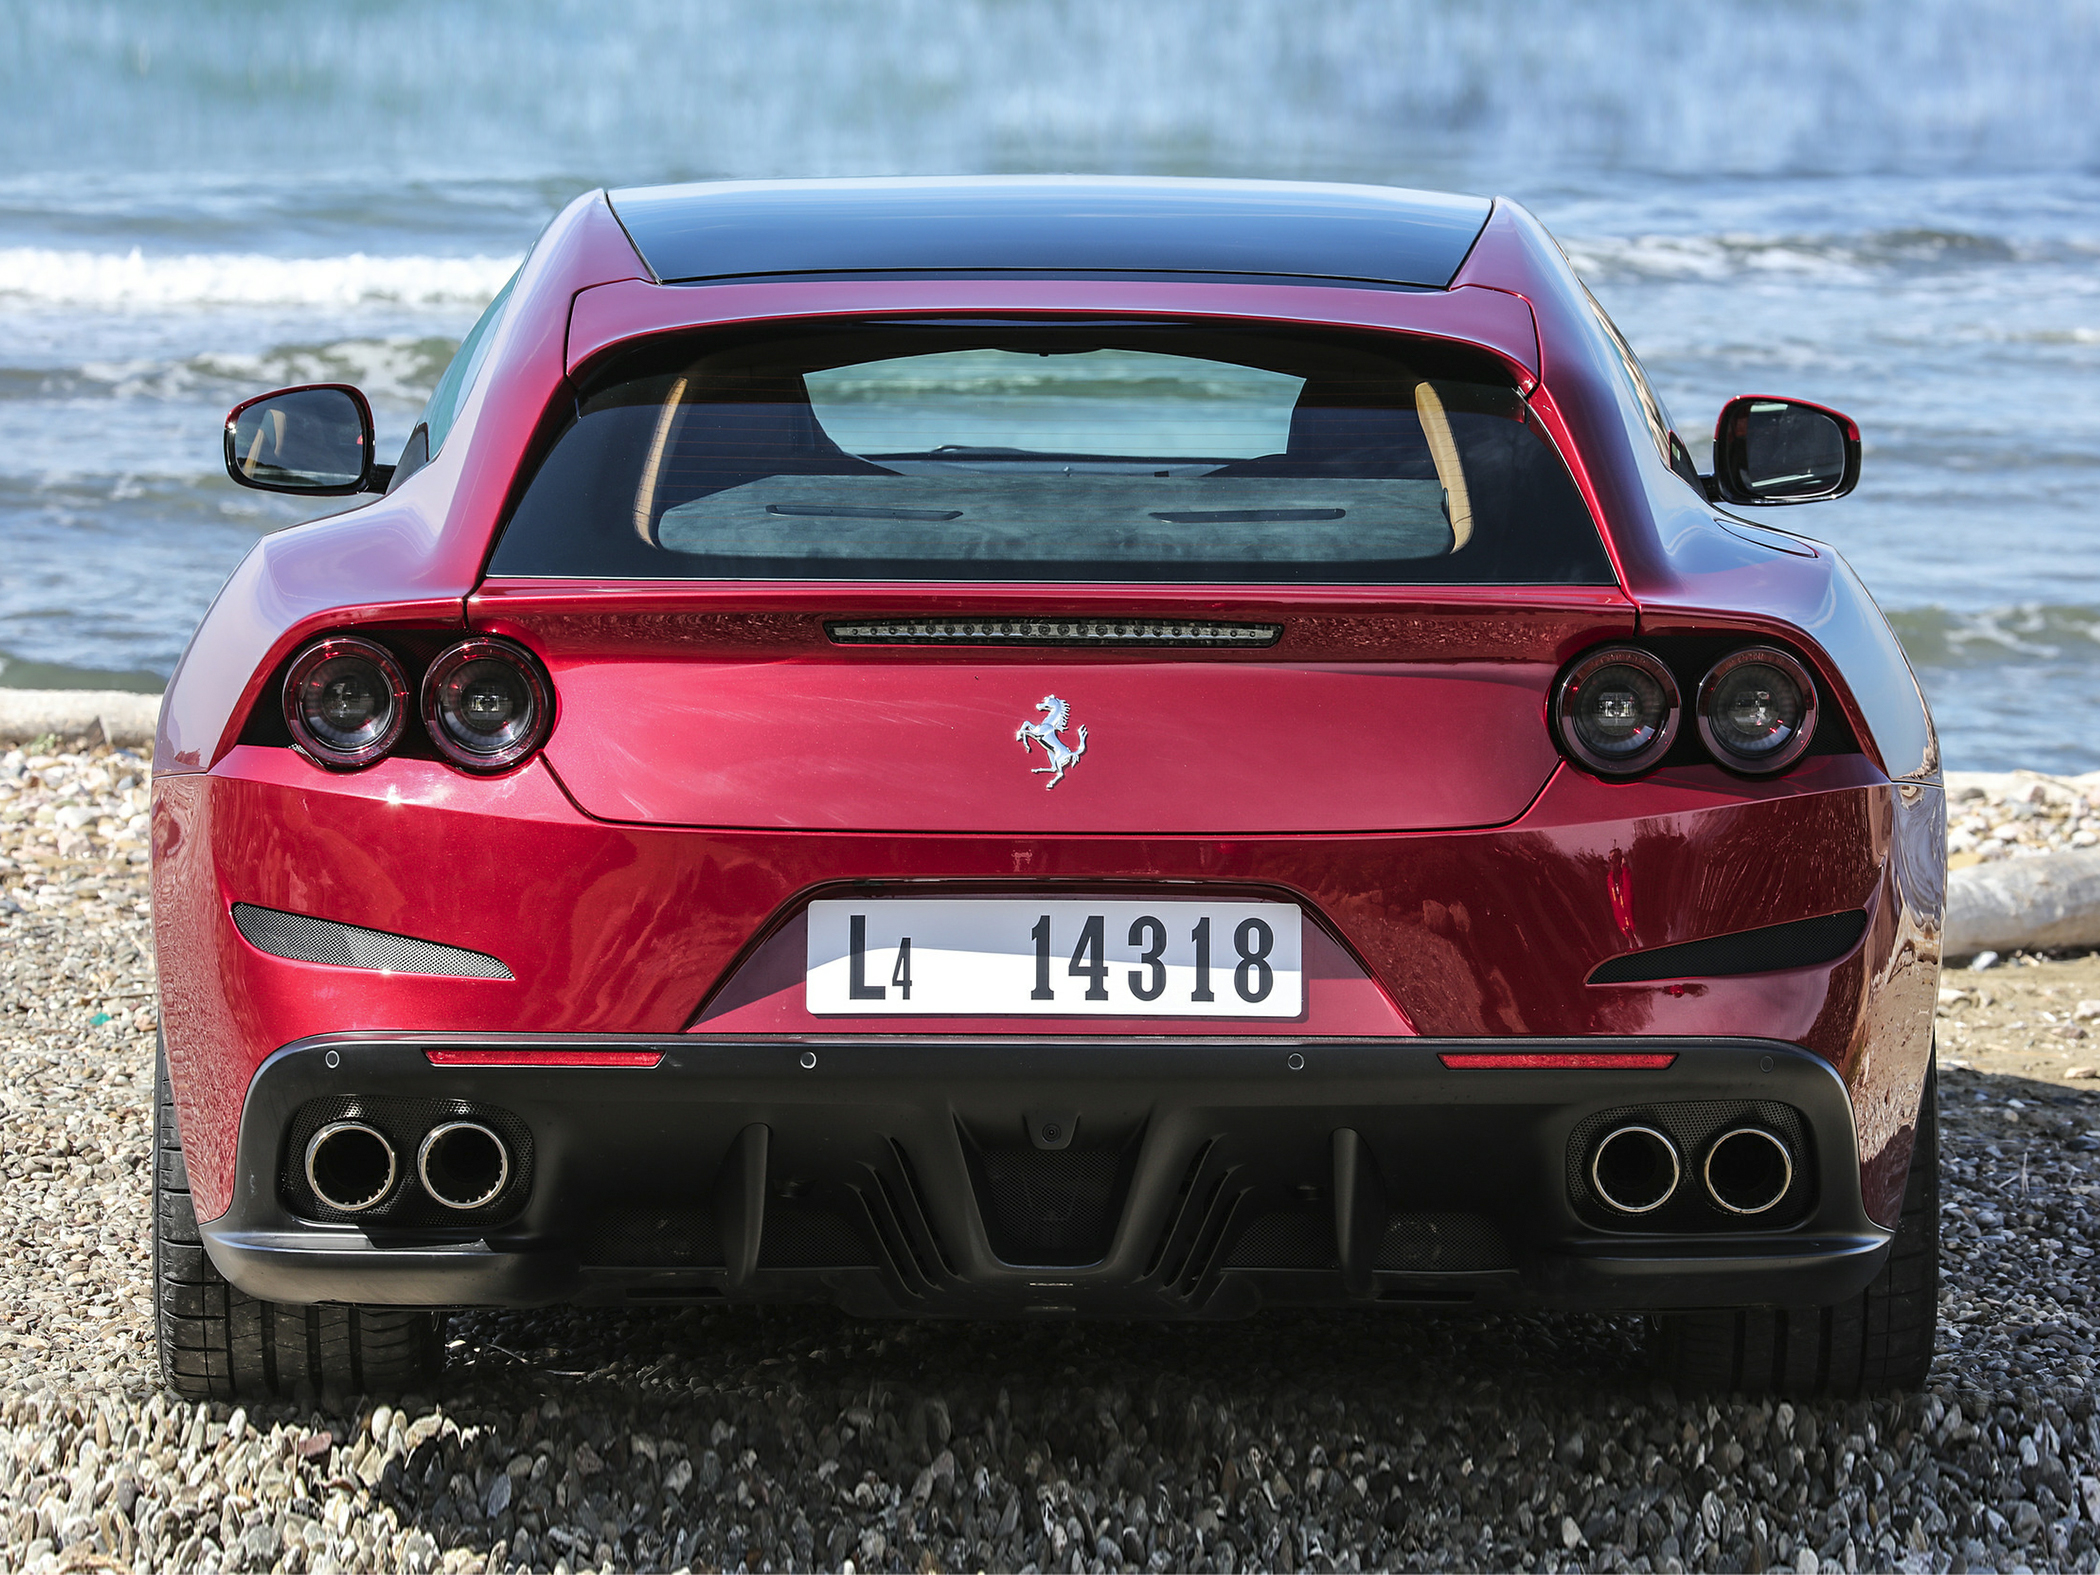 2020 Ferrari GTC4Lusso